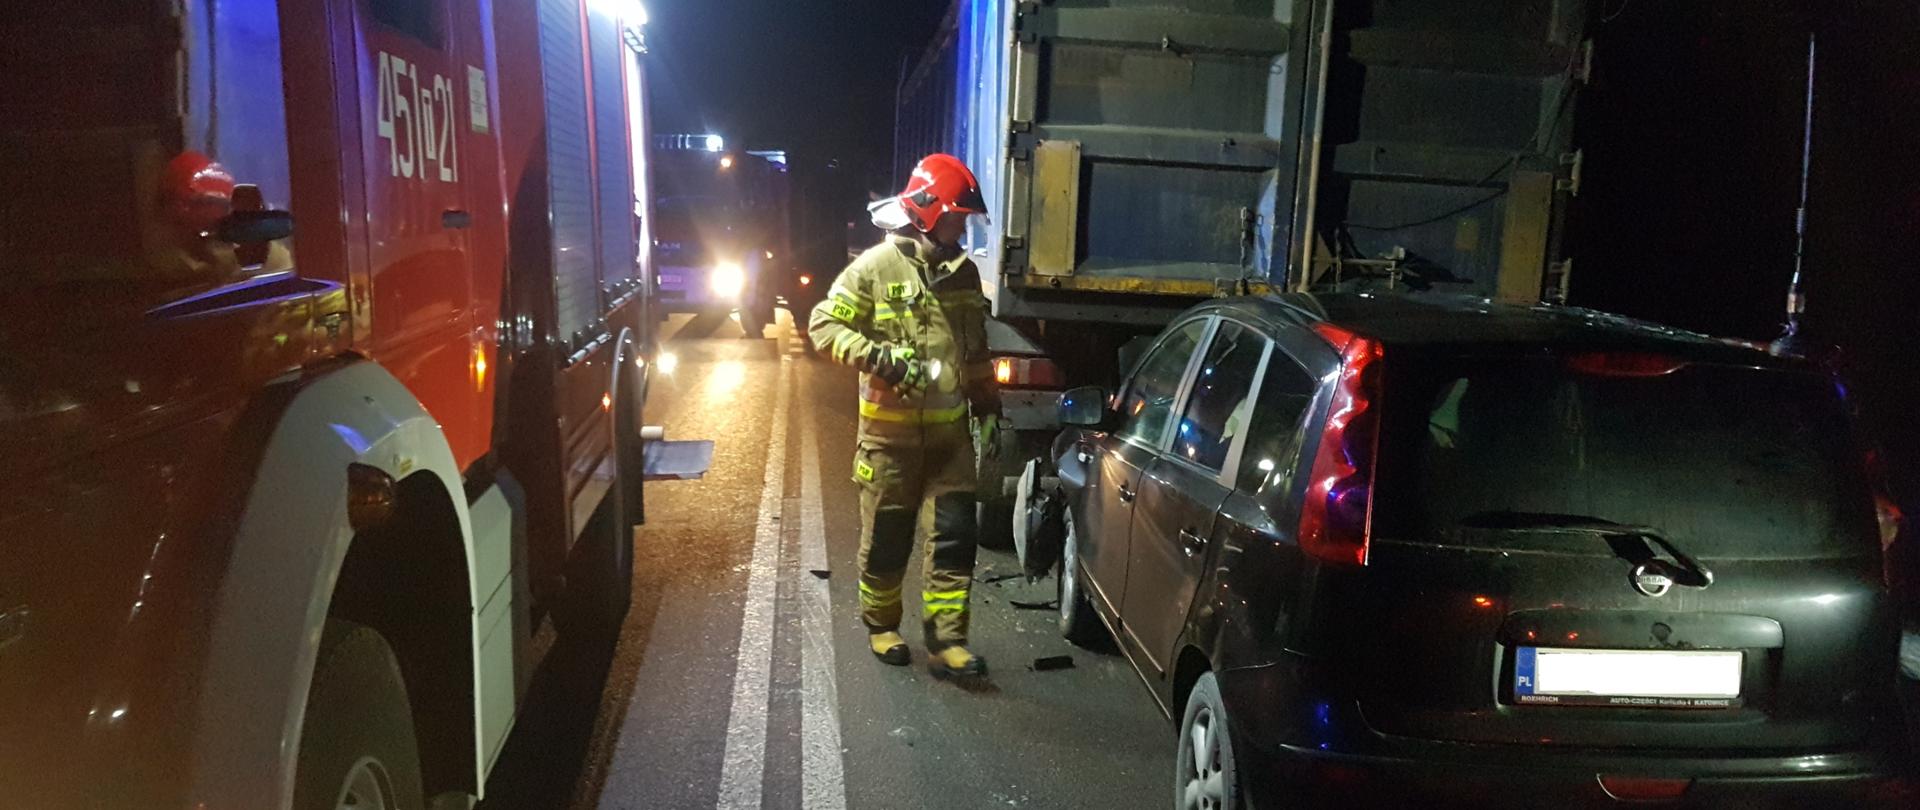 Na zdjęciu w porze nocnej widać strażaka, który stoi obok samochodu osobowego, który wjechał w tył samochodu ciężarowego. Przód samochodu osobowego jest rozbity. Z lewej strony zdarzenia zaparkowane zostały samochody strażackie